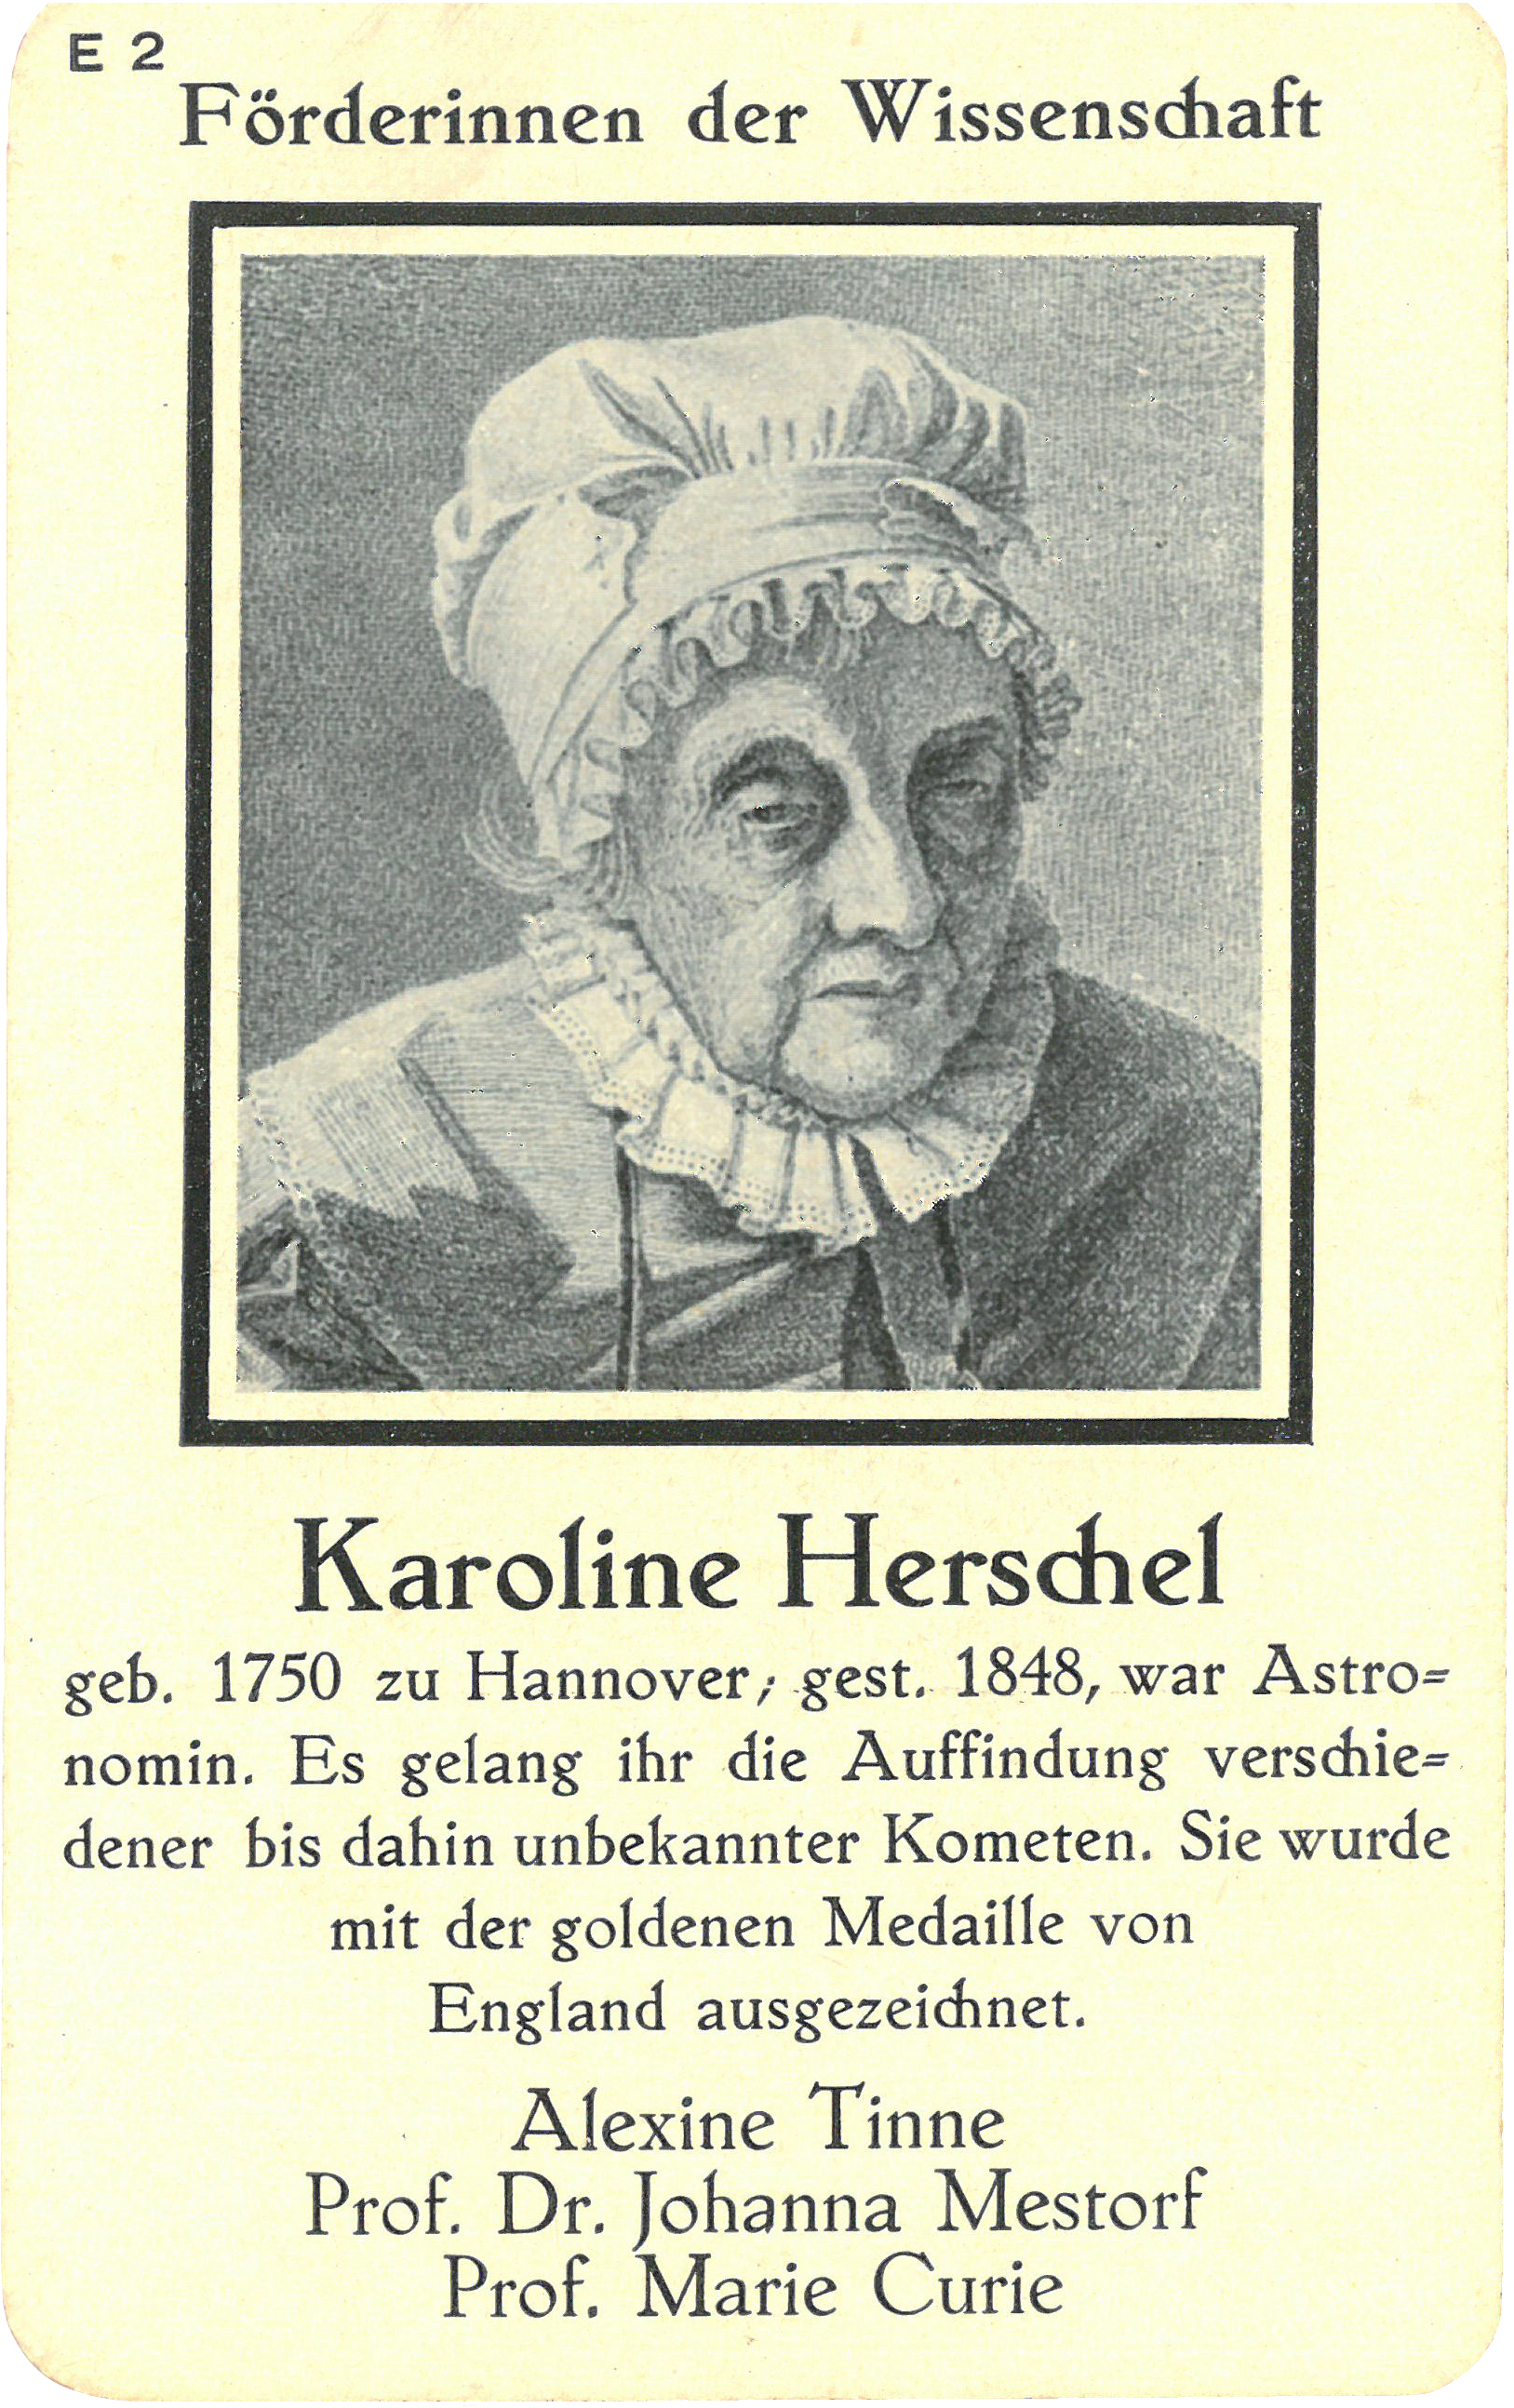 Karoline Herschel